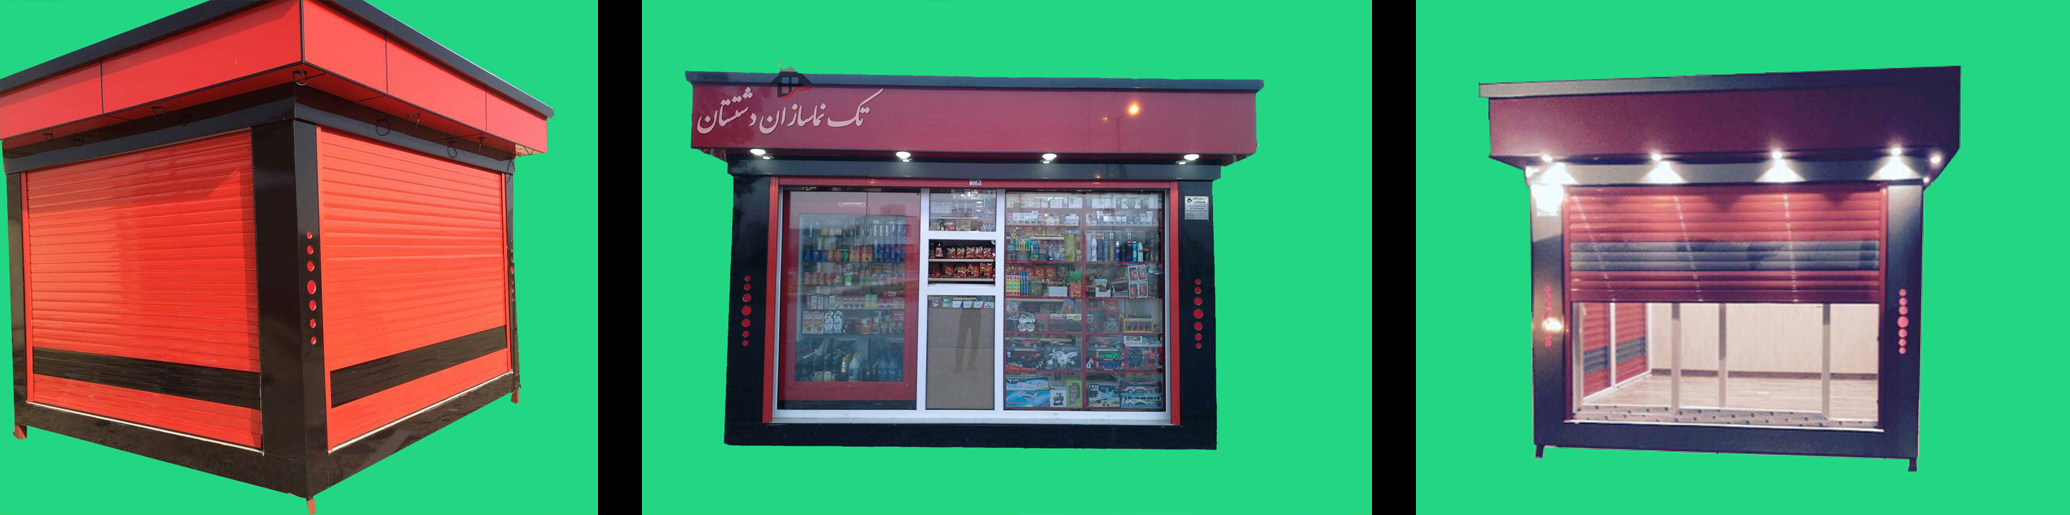 طراحی و اجرای کانکس فروشگاهی برای مشتری گرامی در شهر خورموج